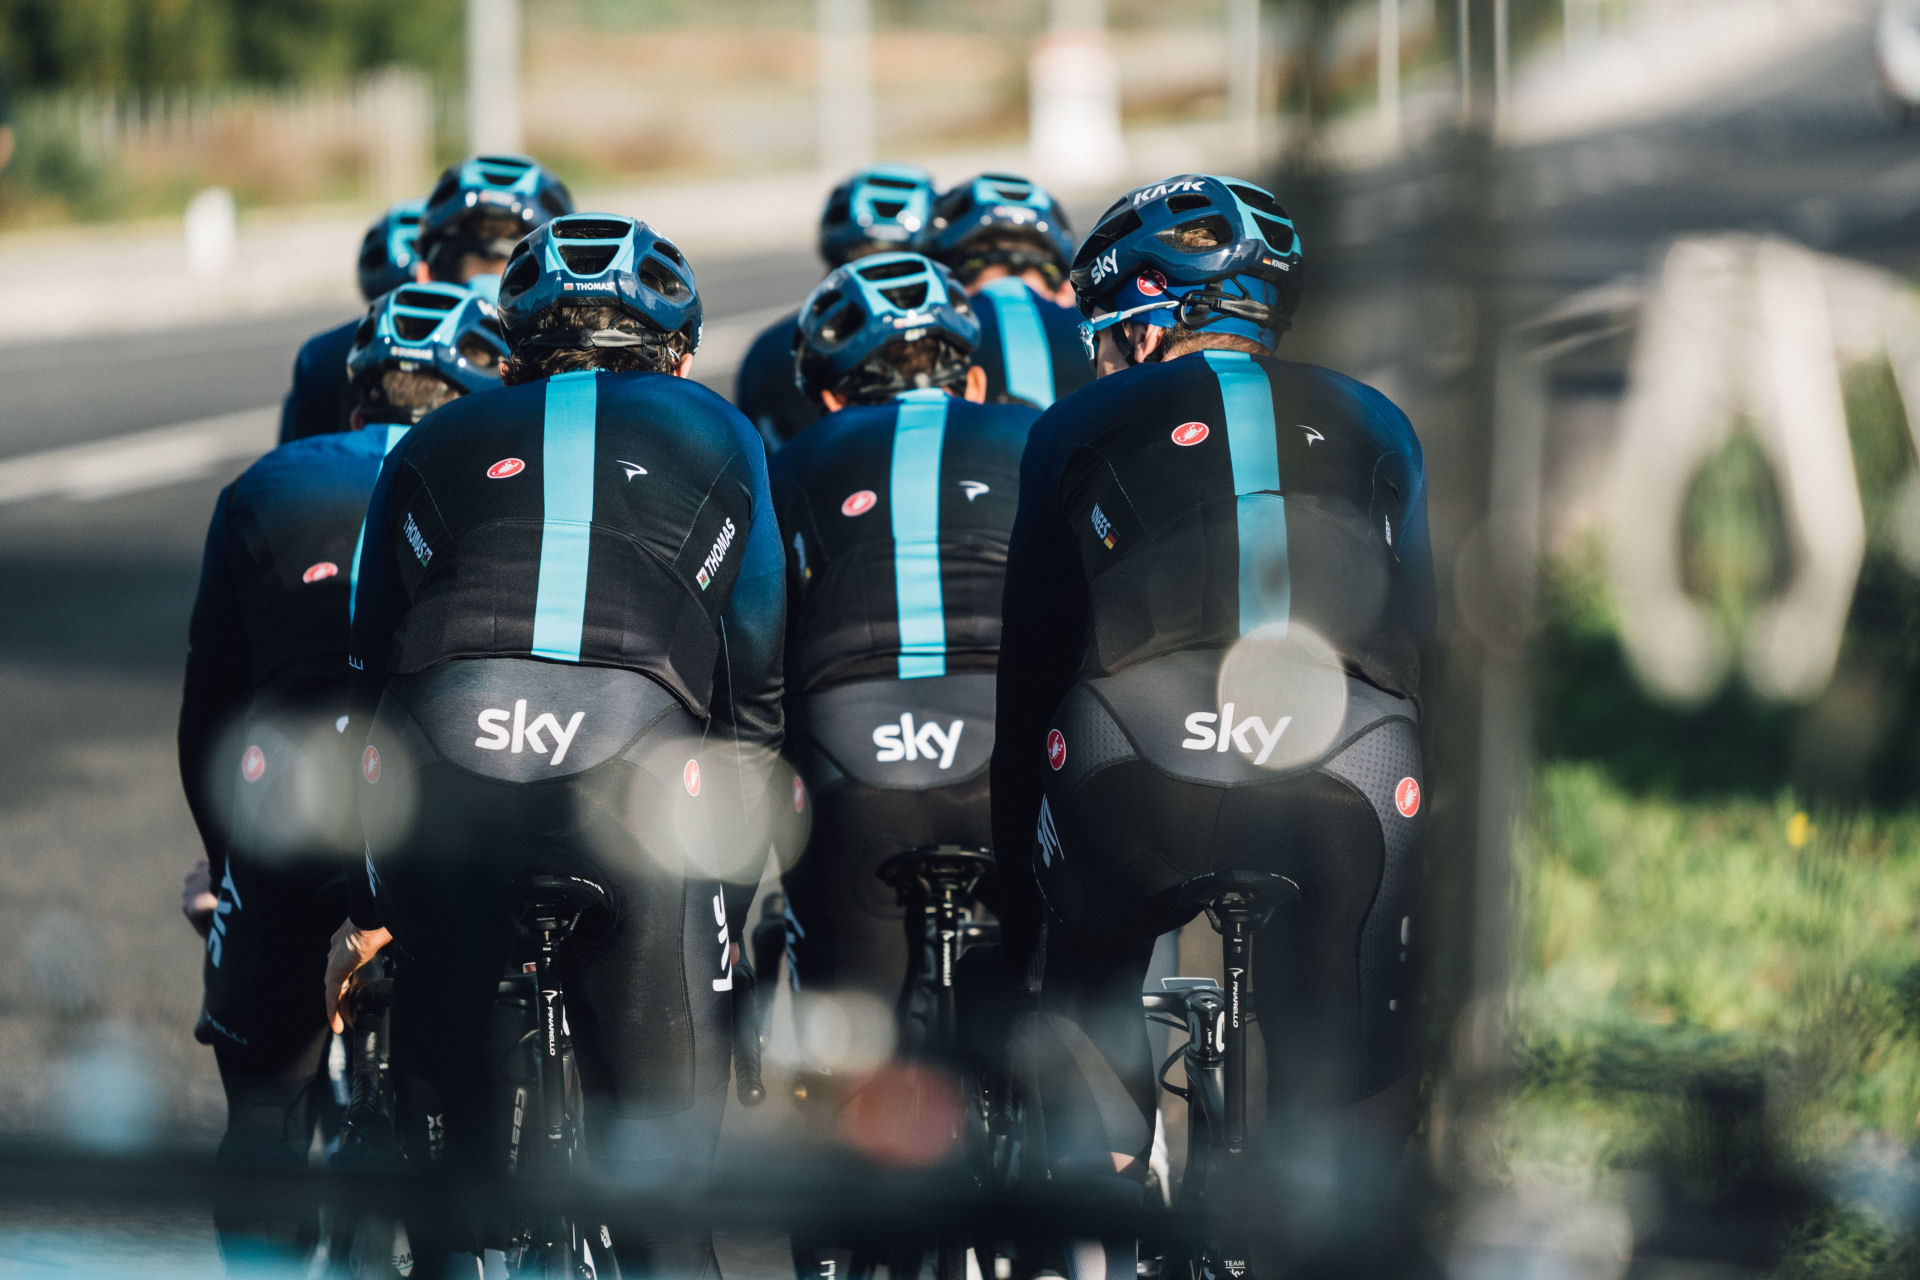 kolarze Team Sky na rowerach w czasie zgrupowania